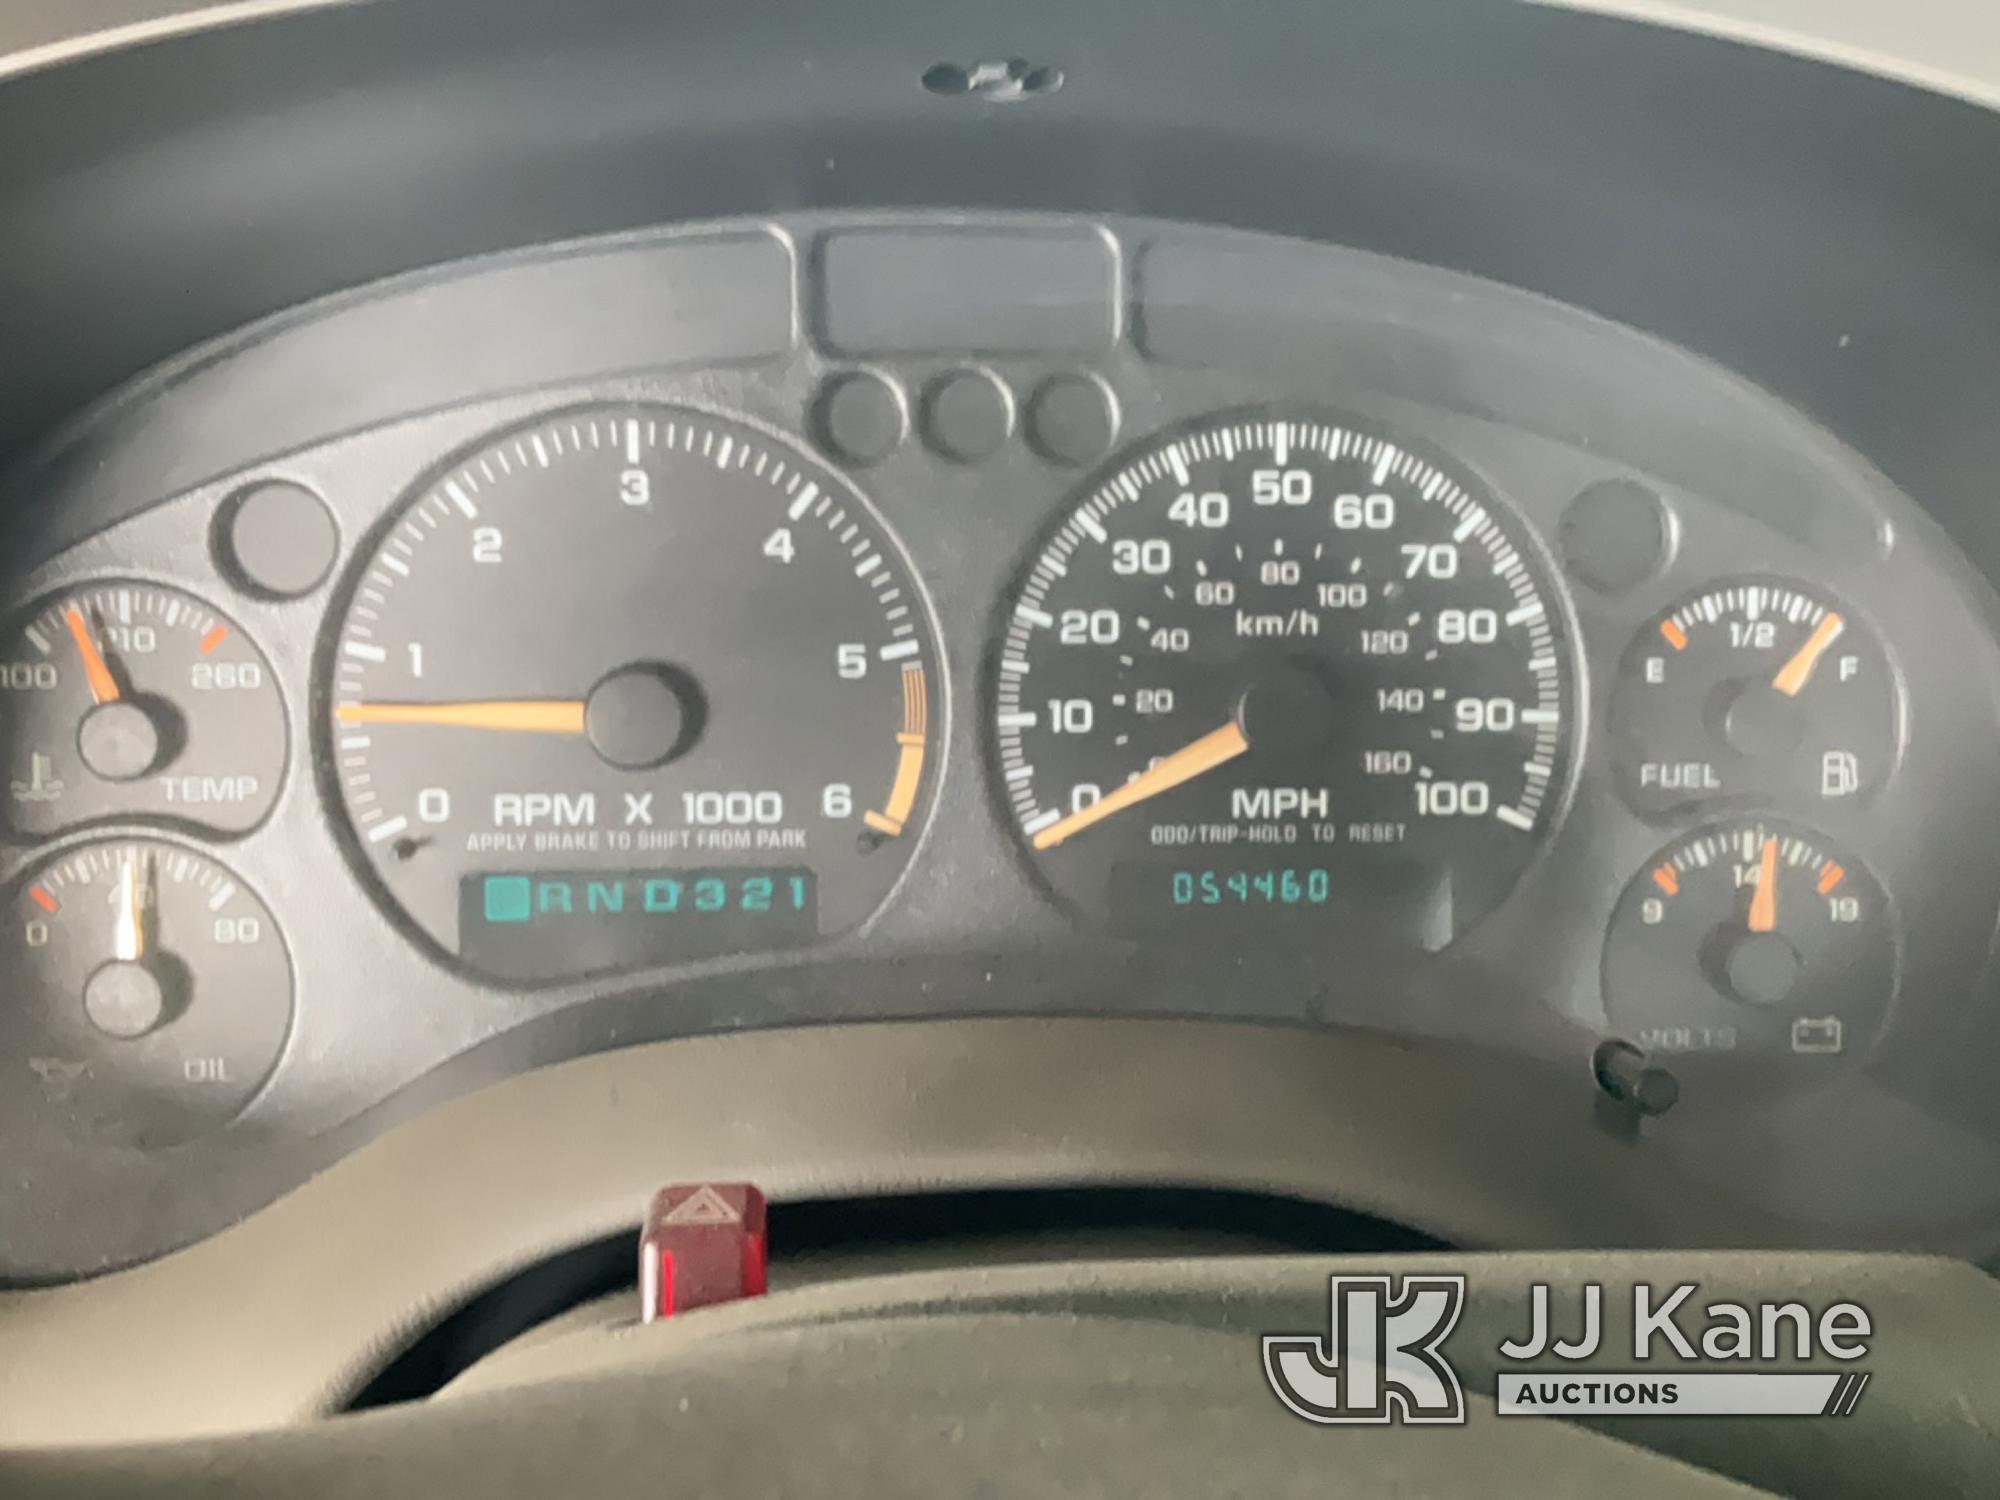 (Jurupa Valley, CA) 2002 Chevrolet S10 Pickup Truck Runs & Moves, Overheats